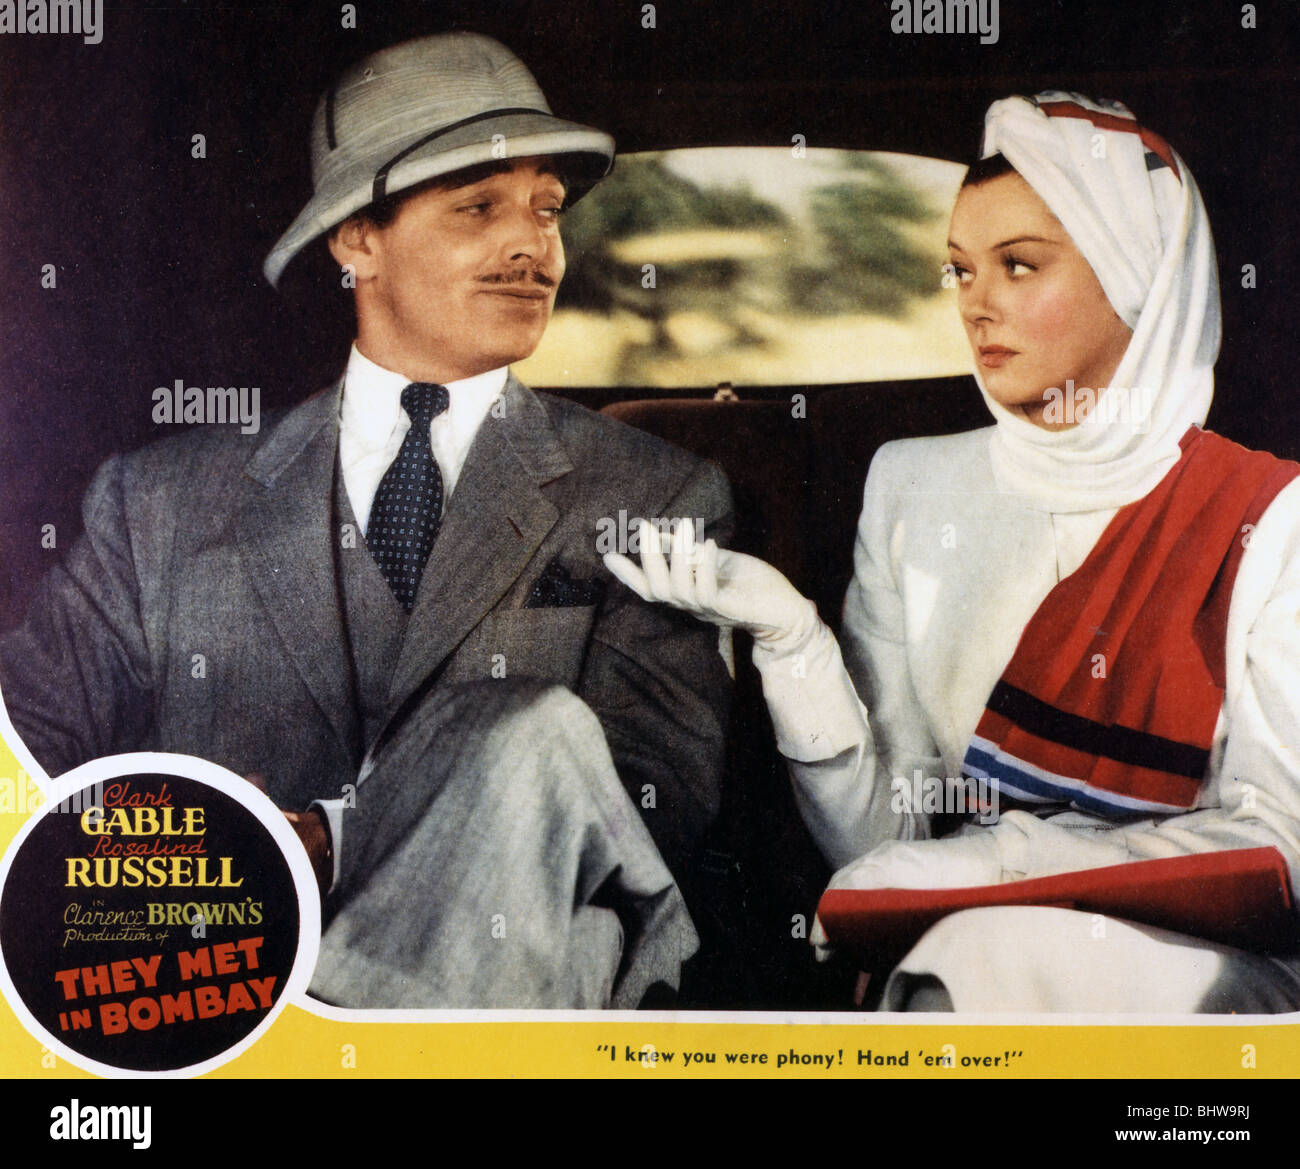 Sie MET IN BOMBAY - 1941 MGM Film mit Clark Gable und Rosalind Russell Stockfoto